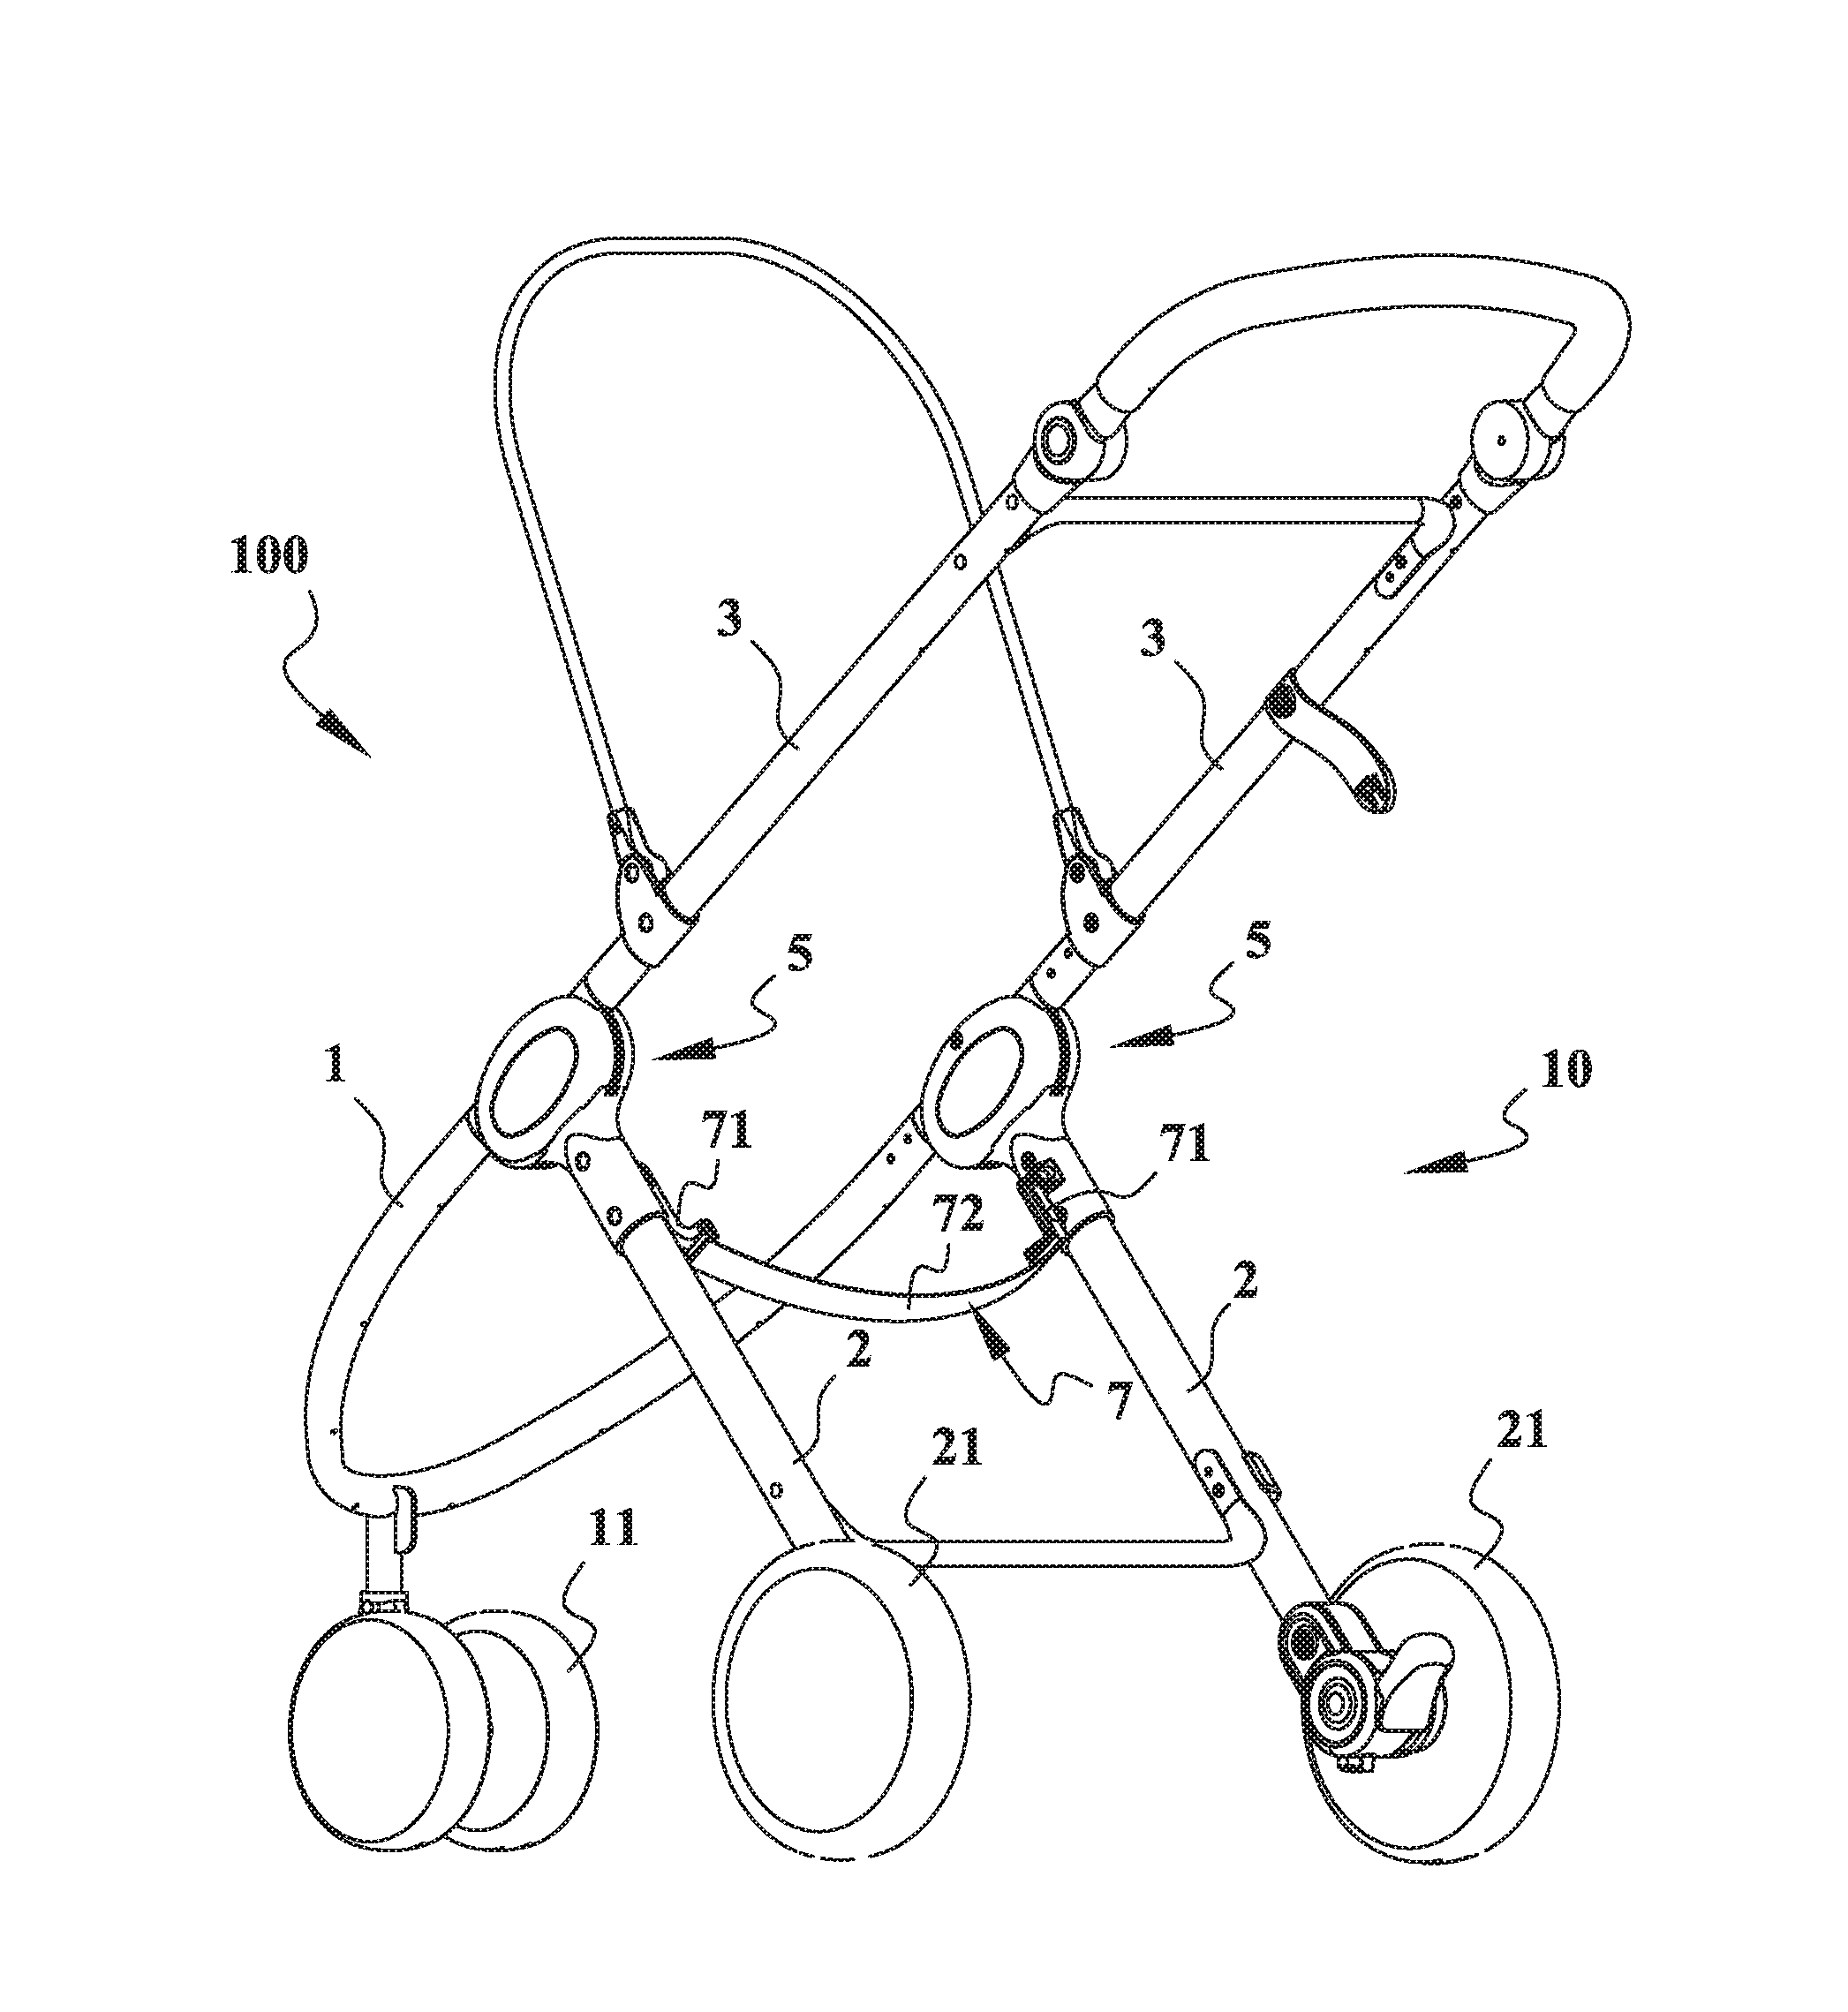 Pivot joint for a stroller frame